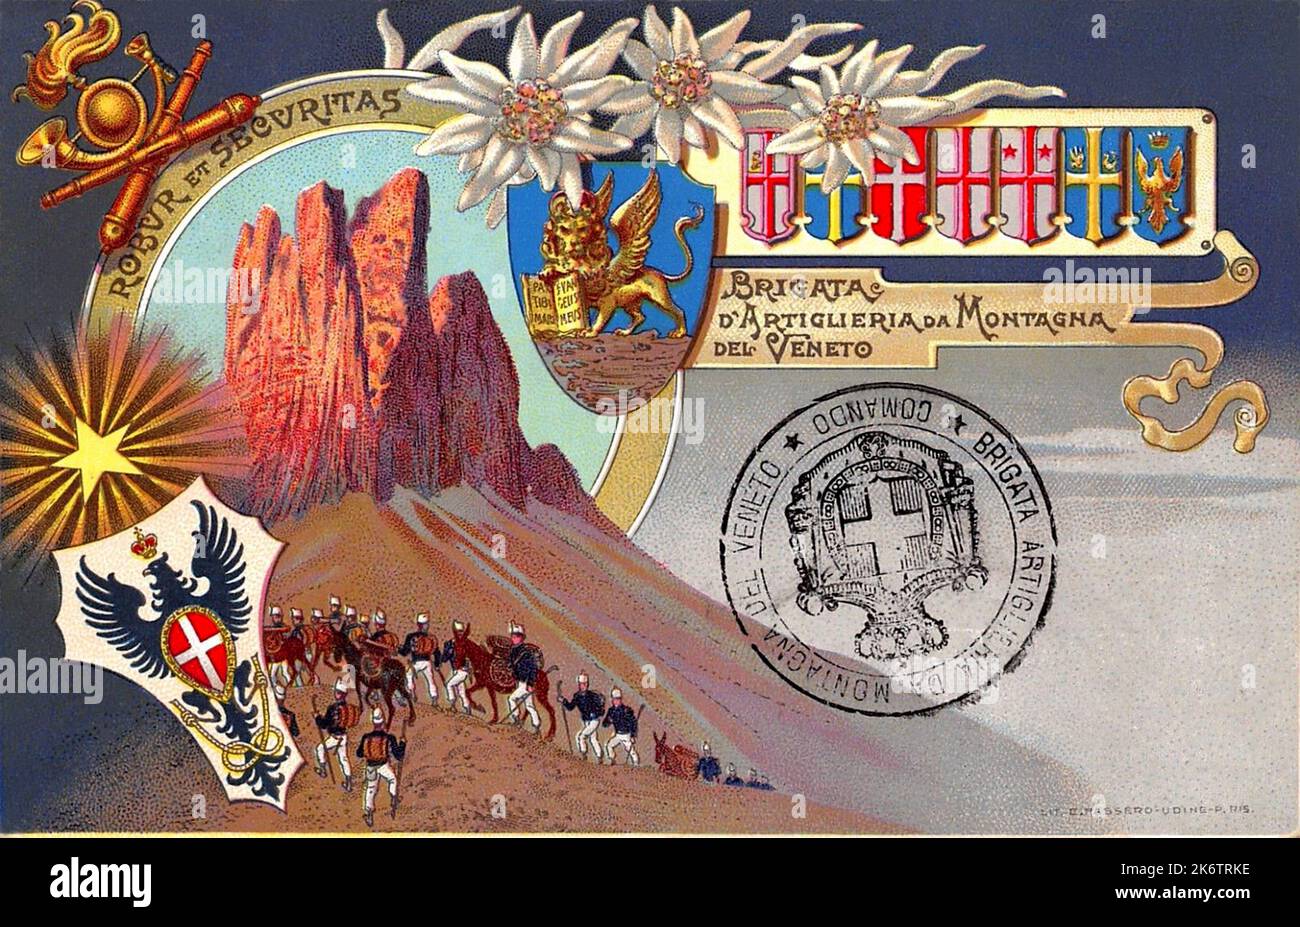 1900 Ca , ITALIEN : Eine Postkarte mit italienischen Militär ALPINI auf den Dolomiten der BRIGATA D'ARTIGLIERIA da MONTAGNA DEL VENETO . Kunstwerk von unbekannt . - ALPINI - ALPINE - CARTOLINA POSTALE - miliari soldati italiani - GESCHICHTE - FOTO STORICHE - PROPAGANDA - ILLUSTRATION --- Archivio GBB Stockfoto